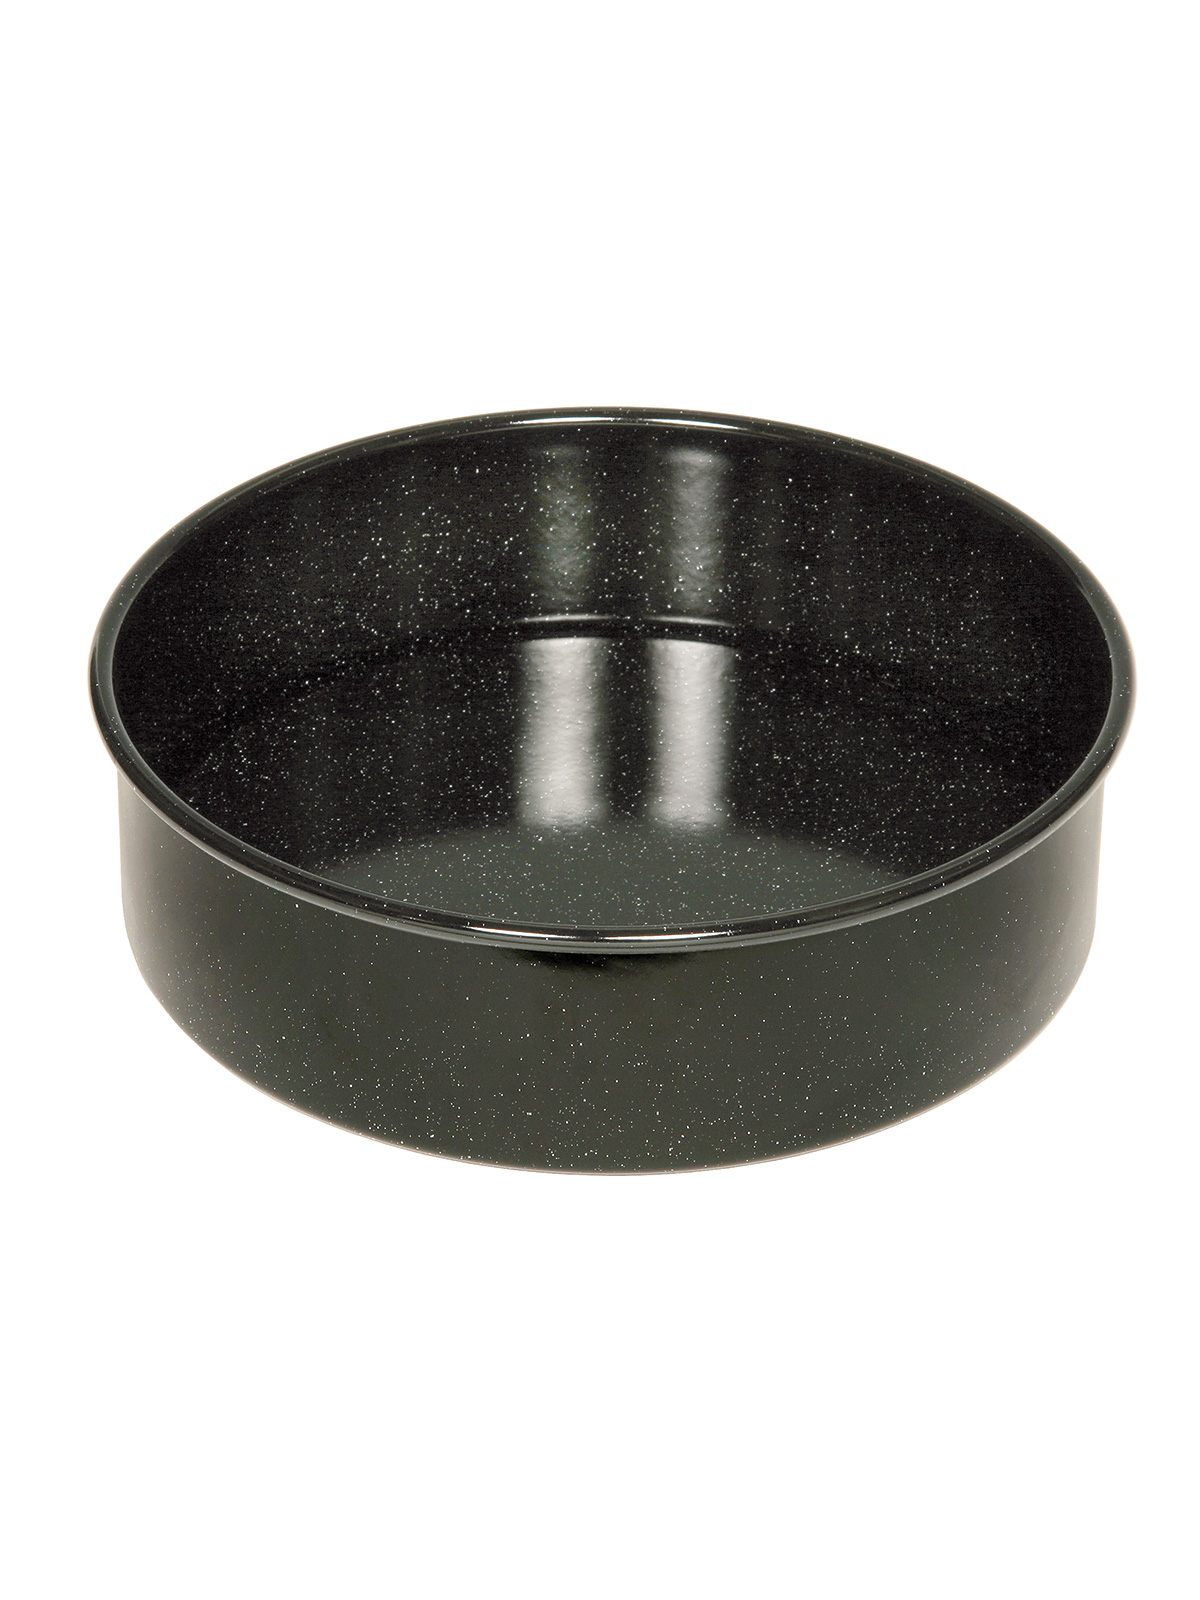 Kuchenform schwarz 24 cm (0493-22)